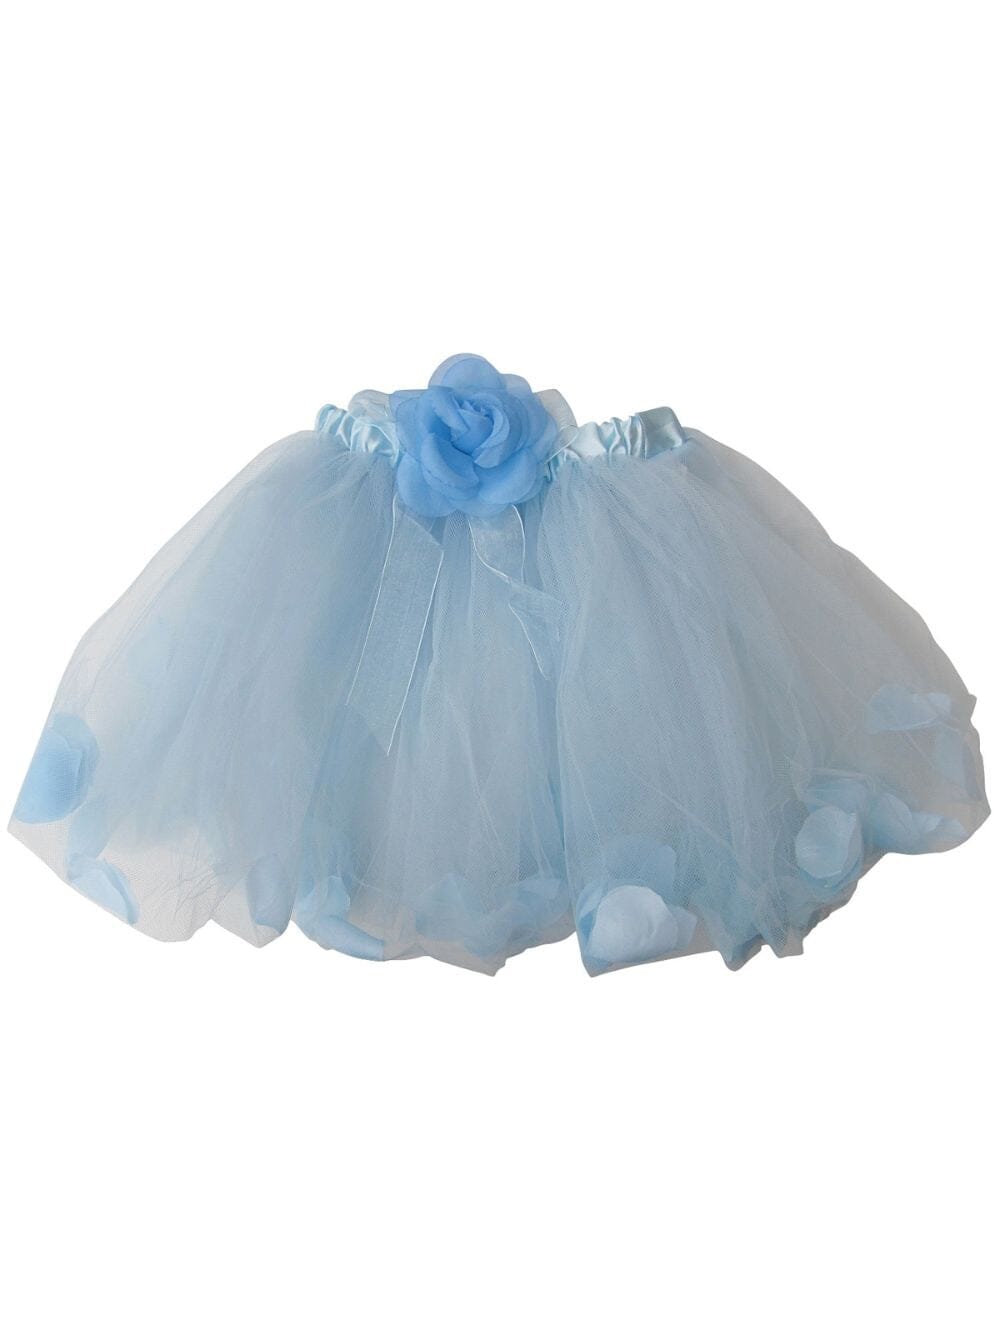 Light Blue Petal Tutu Skirt - Kids Size Tulle Basic Ballet Dance Costume Girls Tutus - Sydney So Sweet